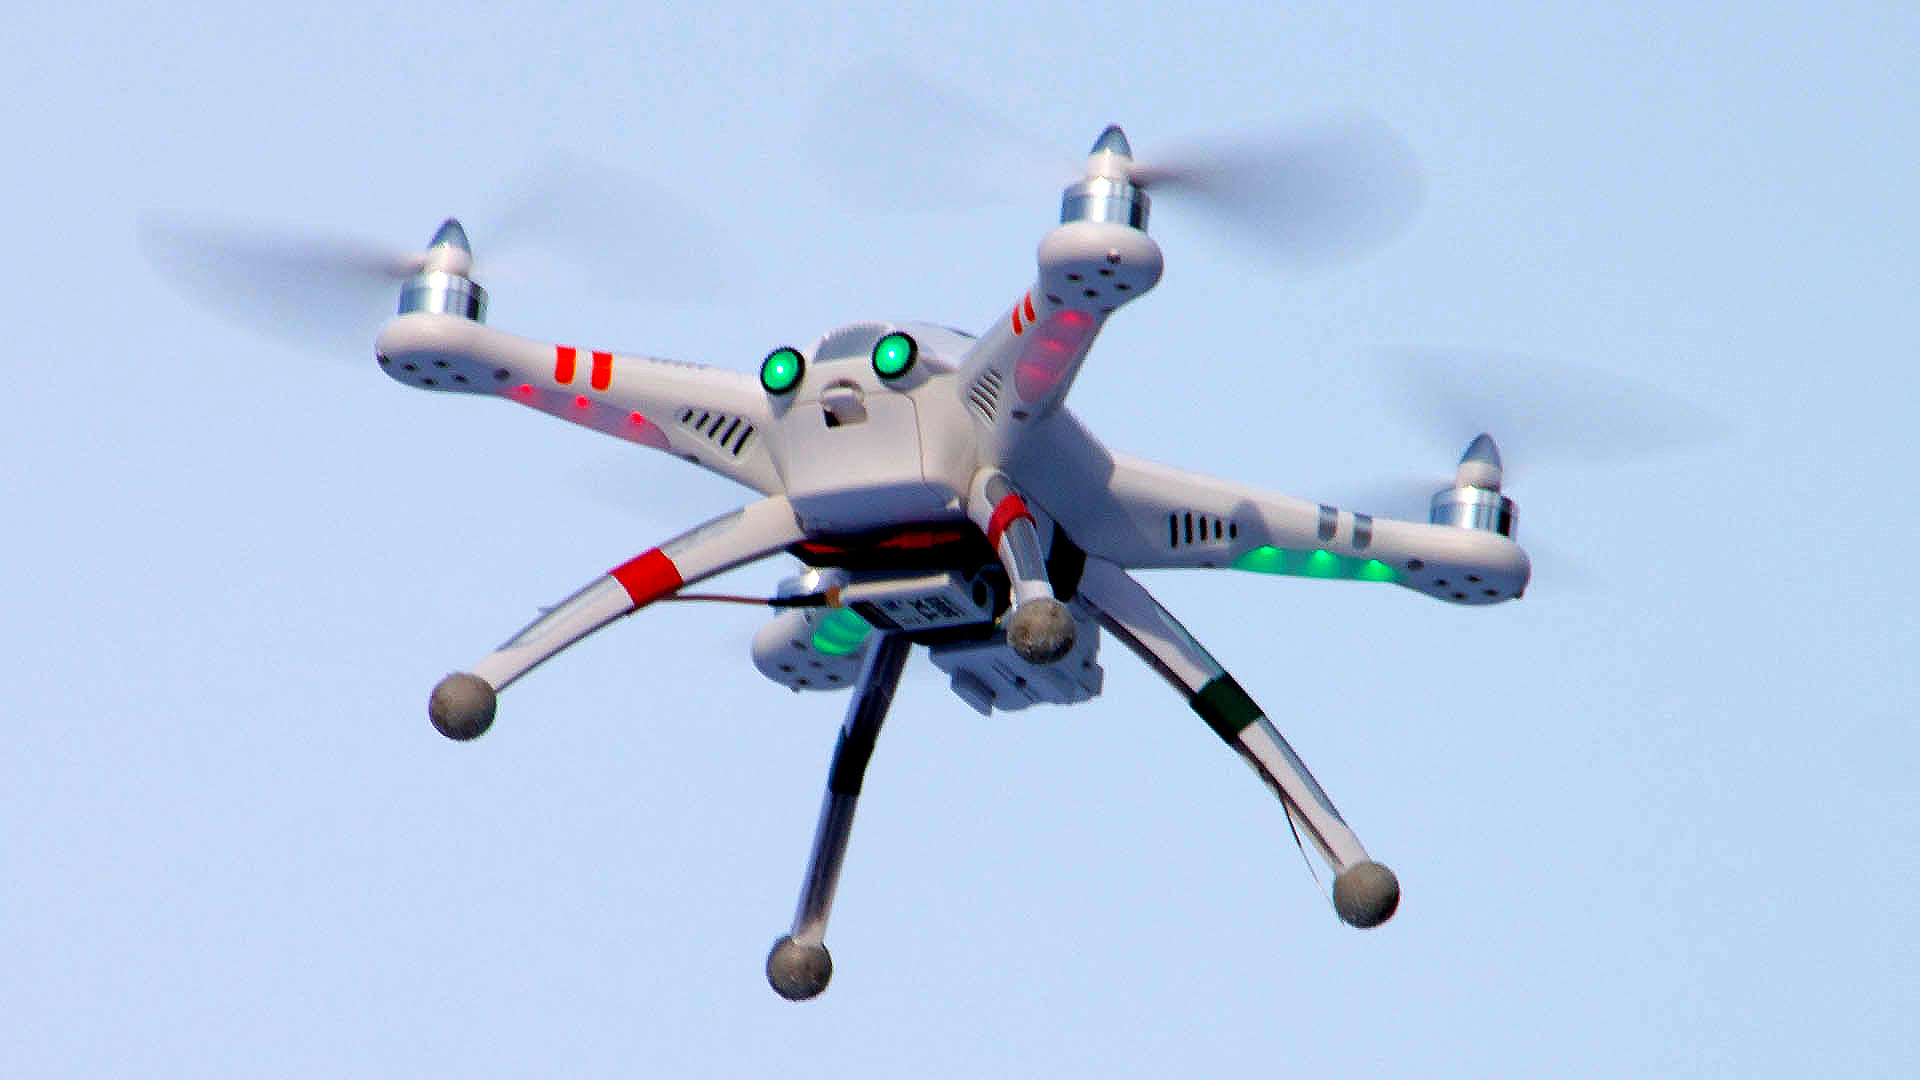 Birleşmiş Milletler drone'ları kayıt altına almak istiyor